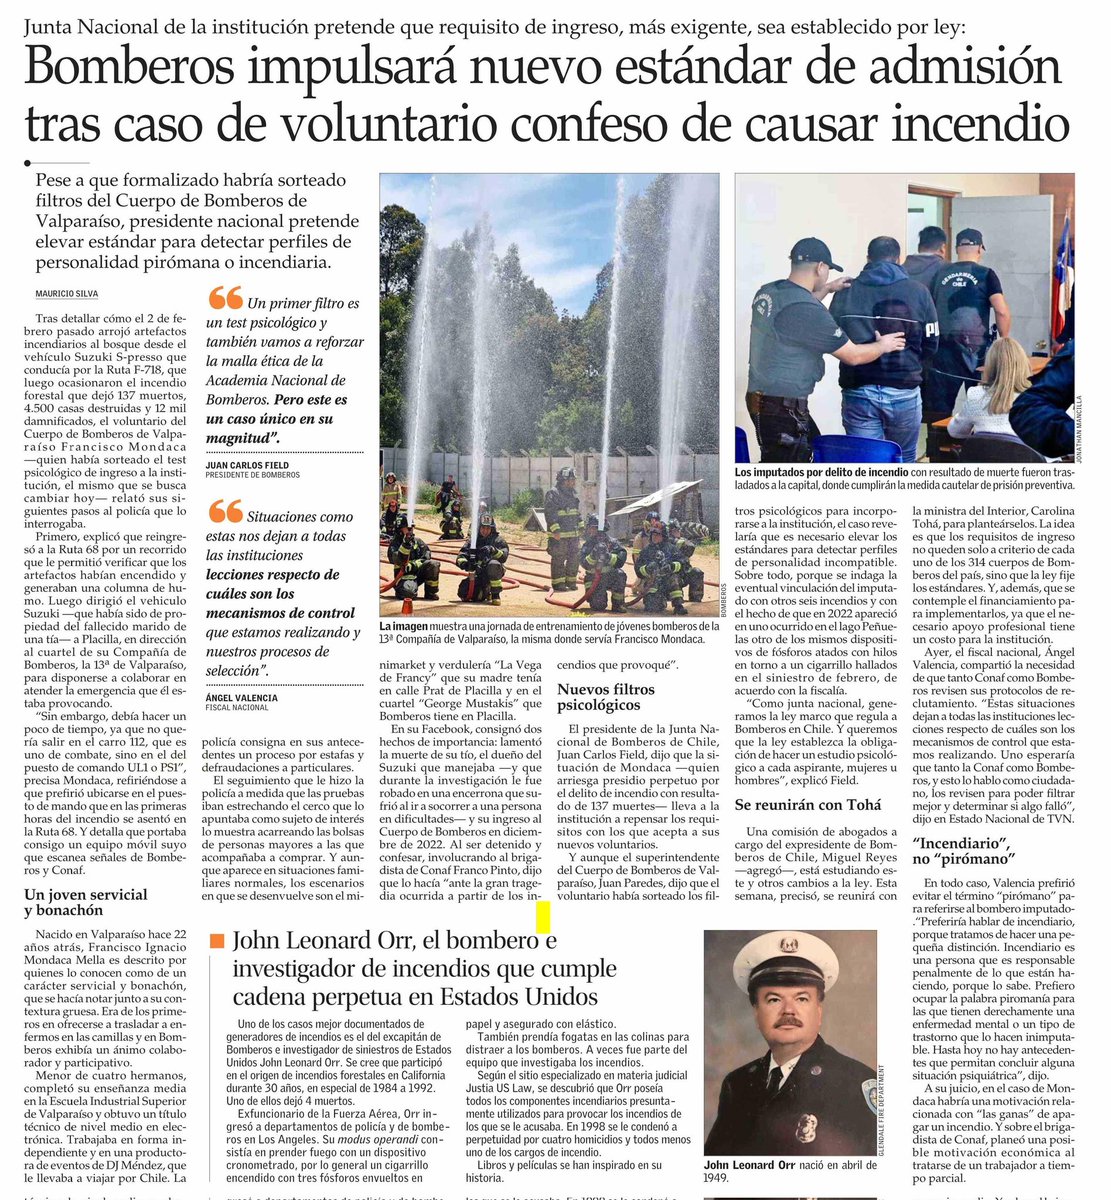 𝗣𝗥𝗘𝗡𝗦𝗔 | #Bomberos impulsará nuevo estándar de admisión tras caso de voluntario confeso de causar incendio. Fuente: Diario El Mercurio.